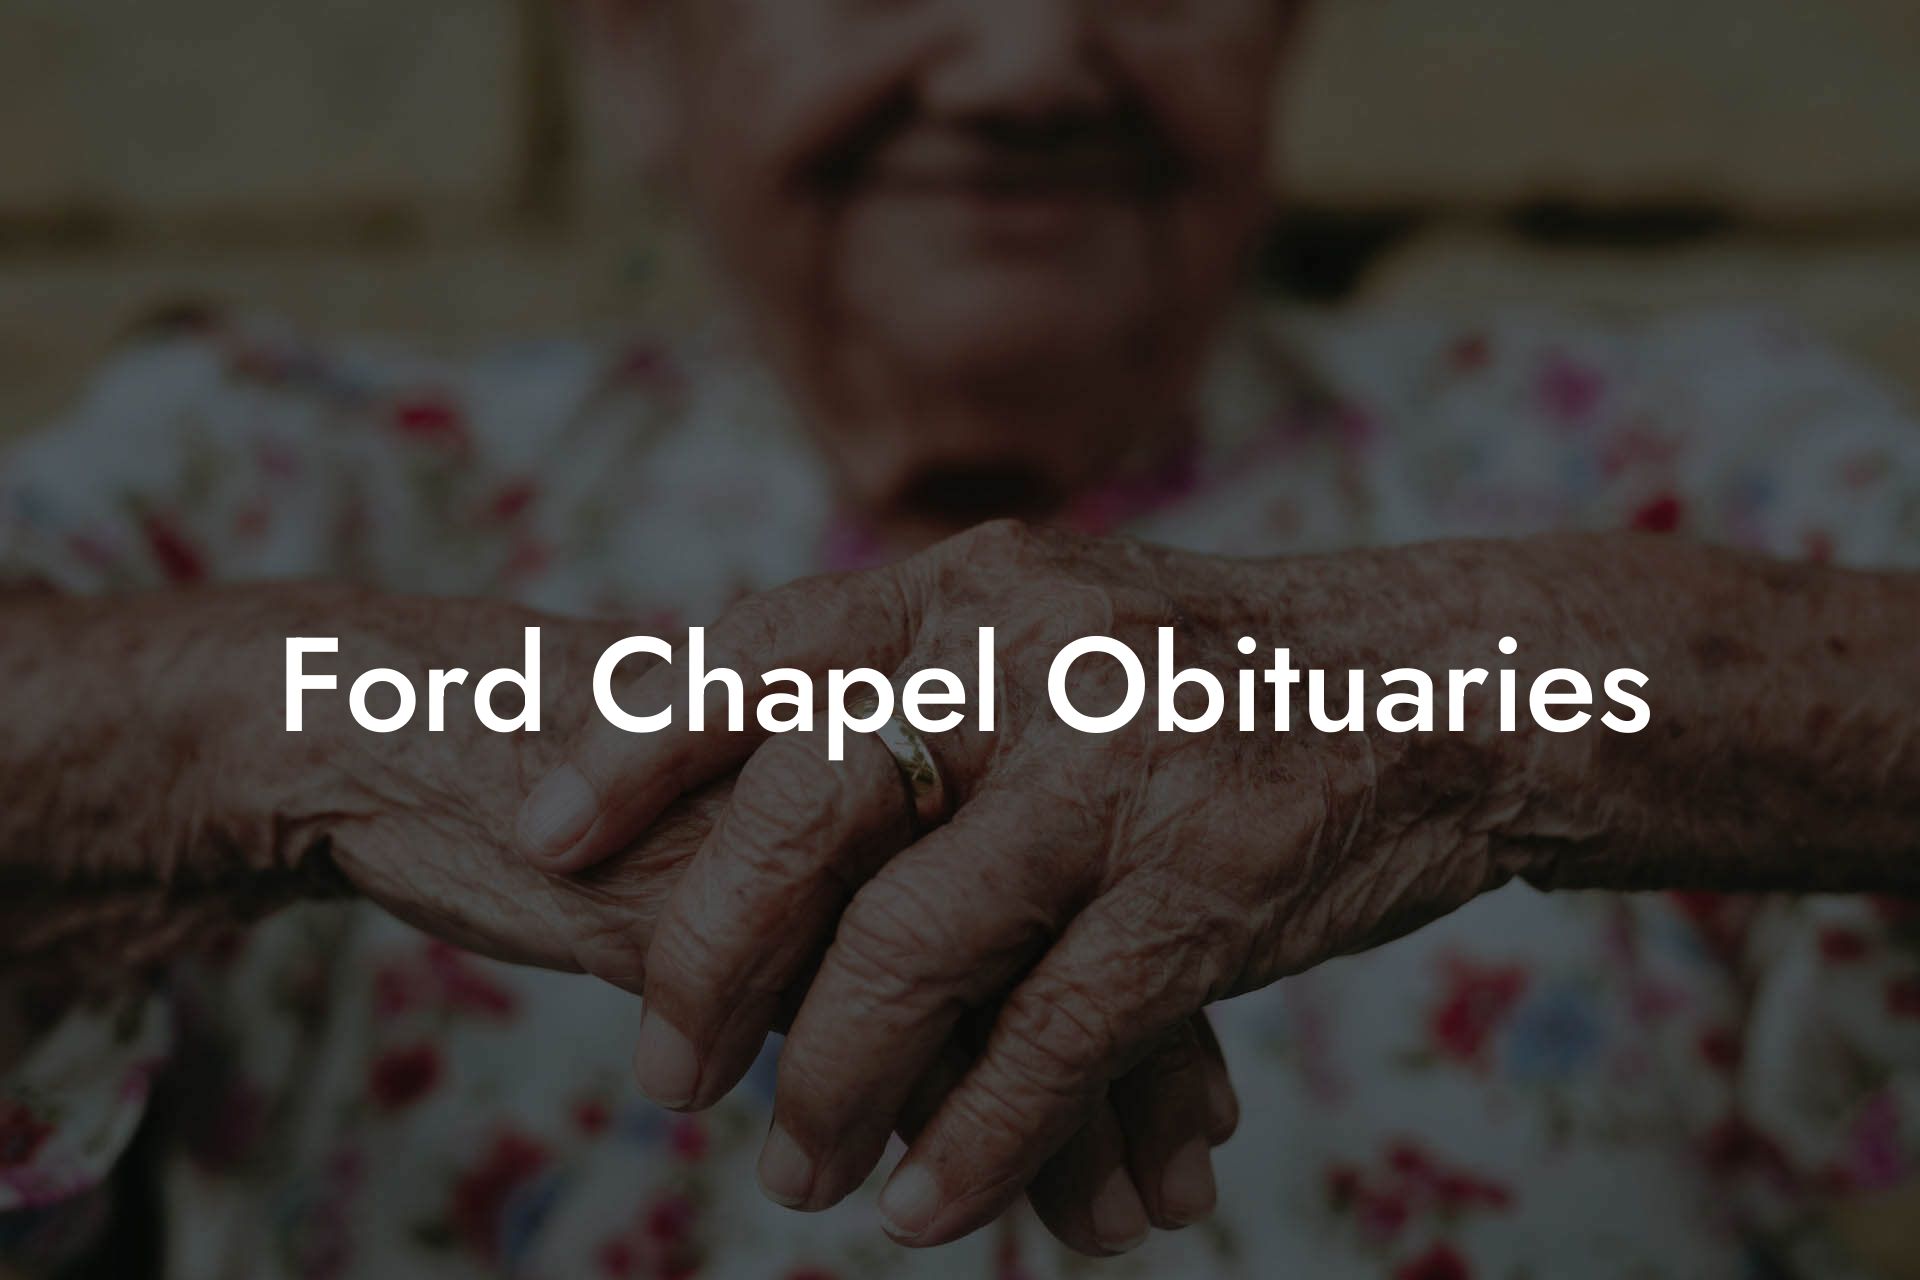 Ford Chapel Obituaries